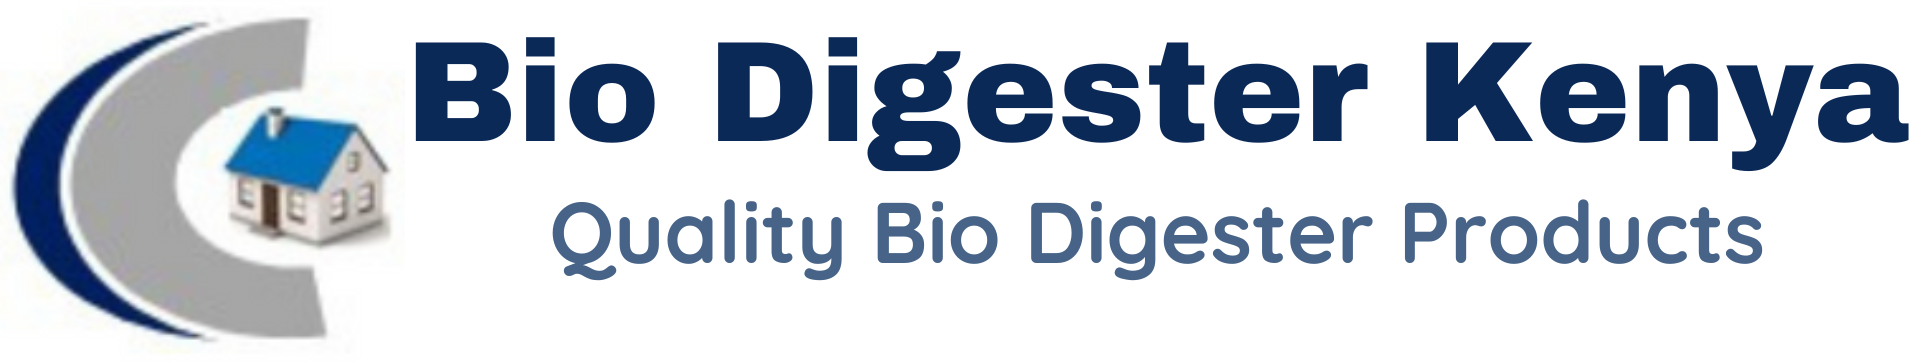 Bio Digester Kenya Logo